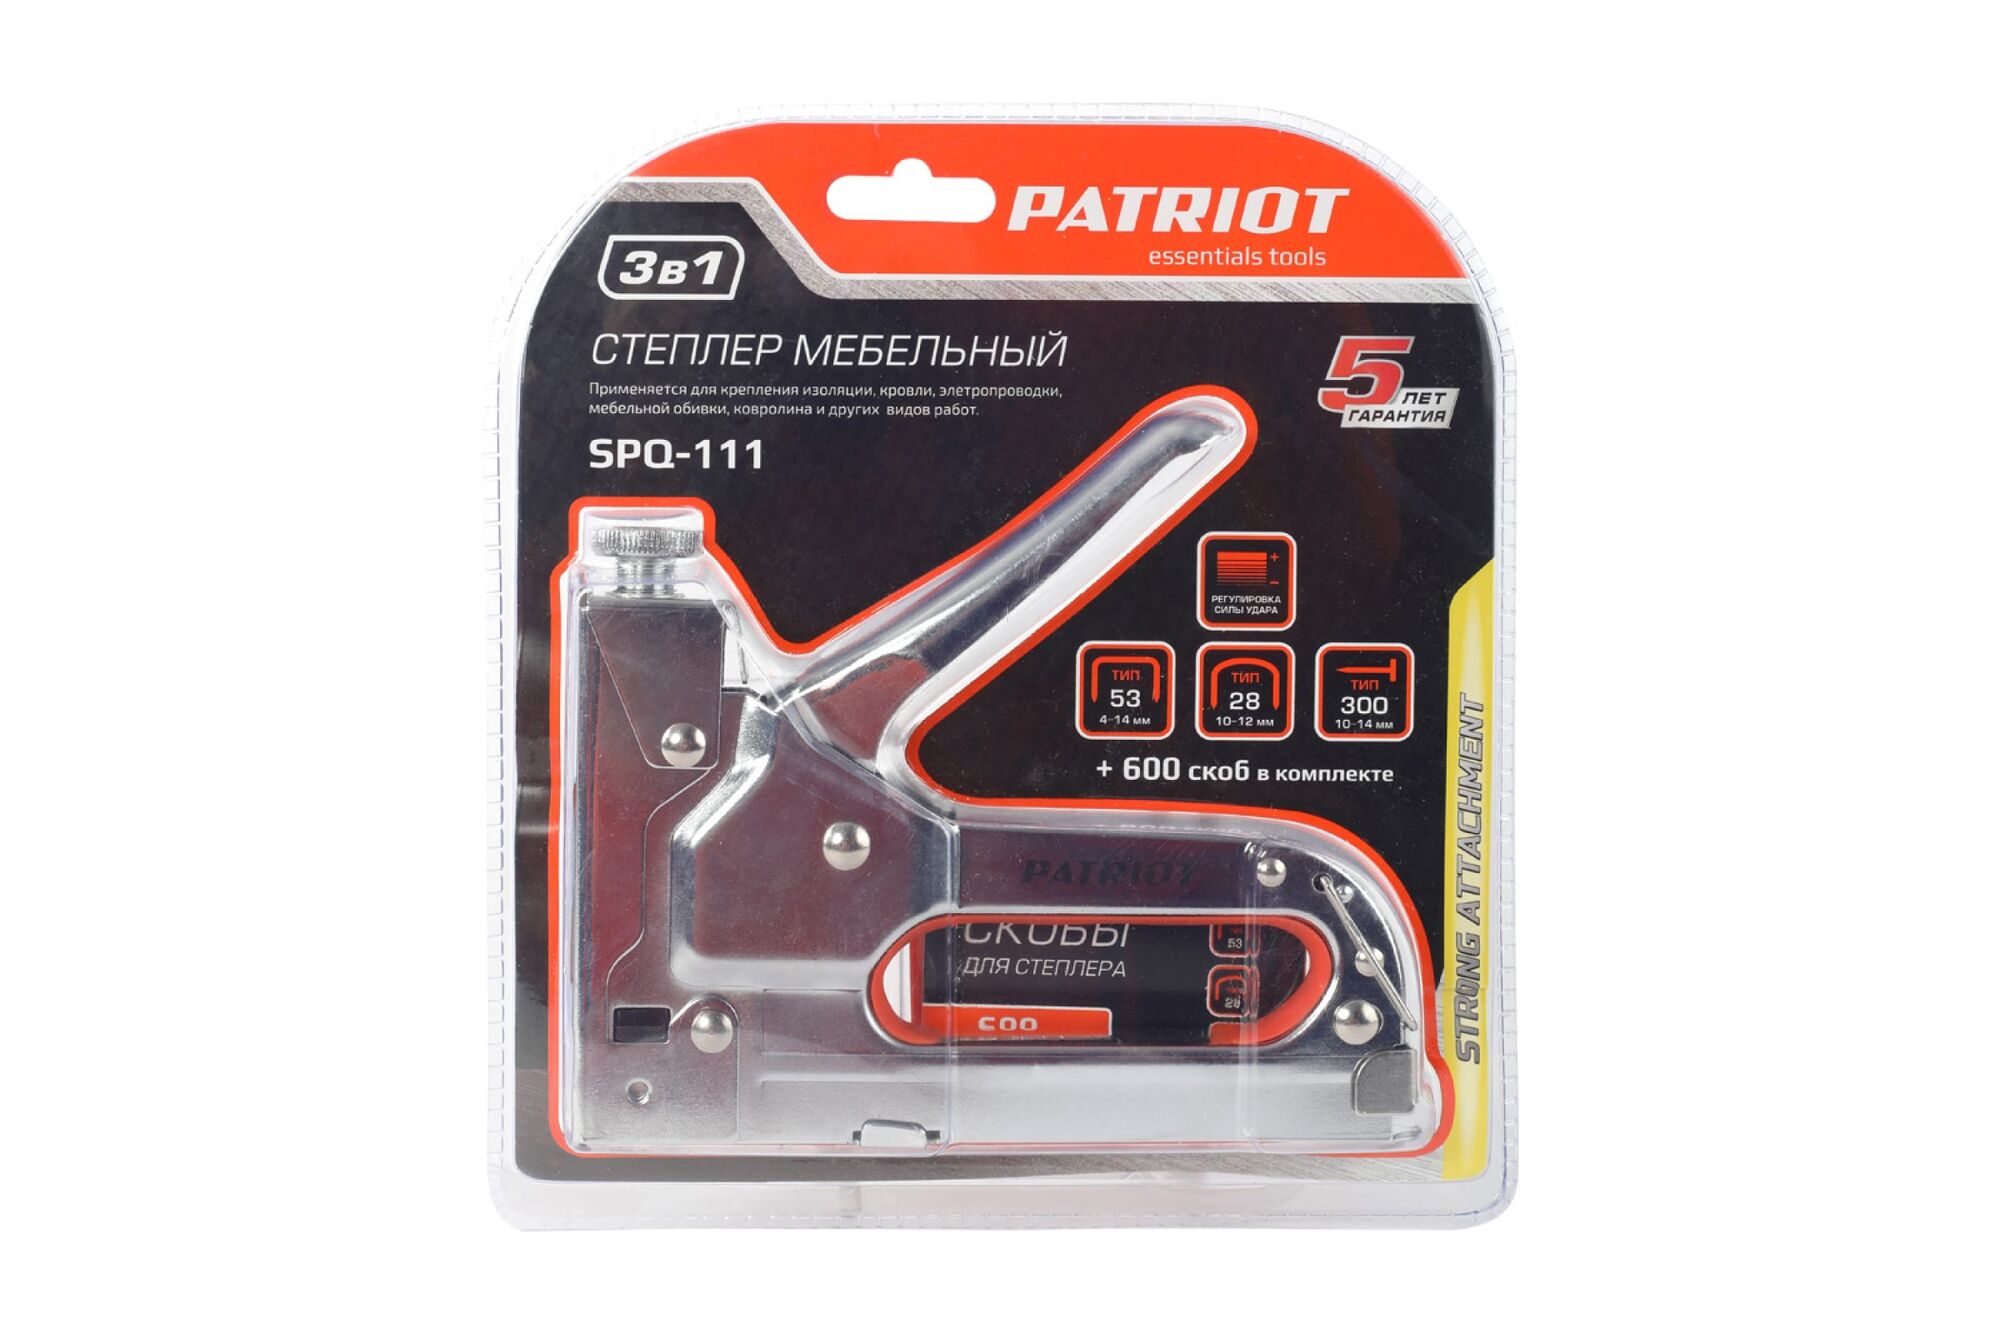 Степлер PATRIOT SPQ-111 3 в 1 350007502 3